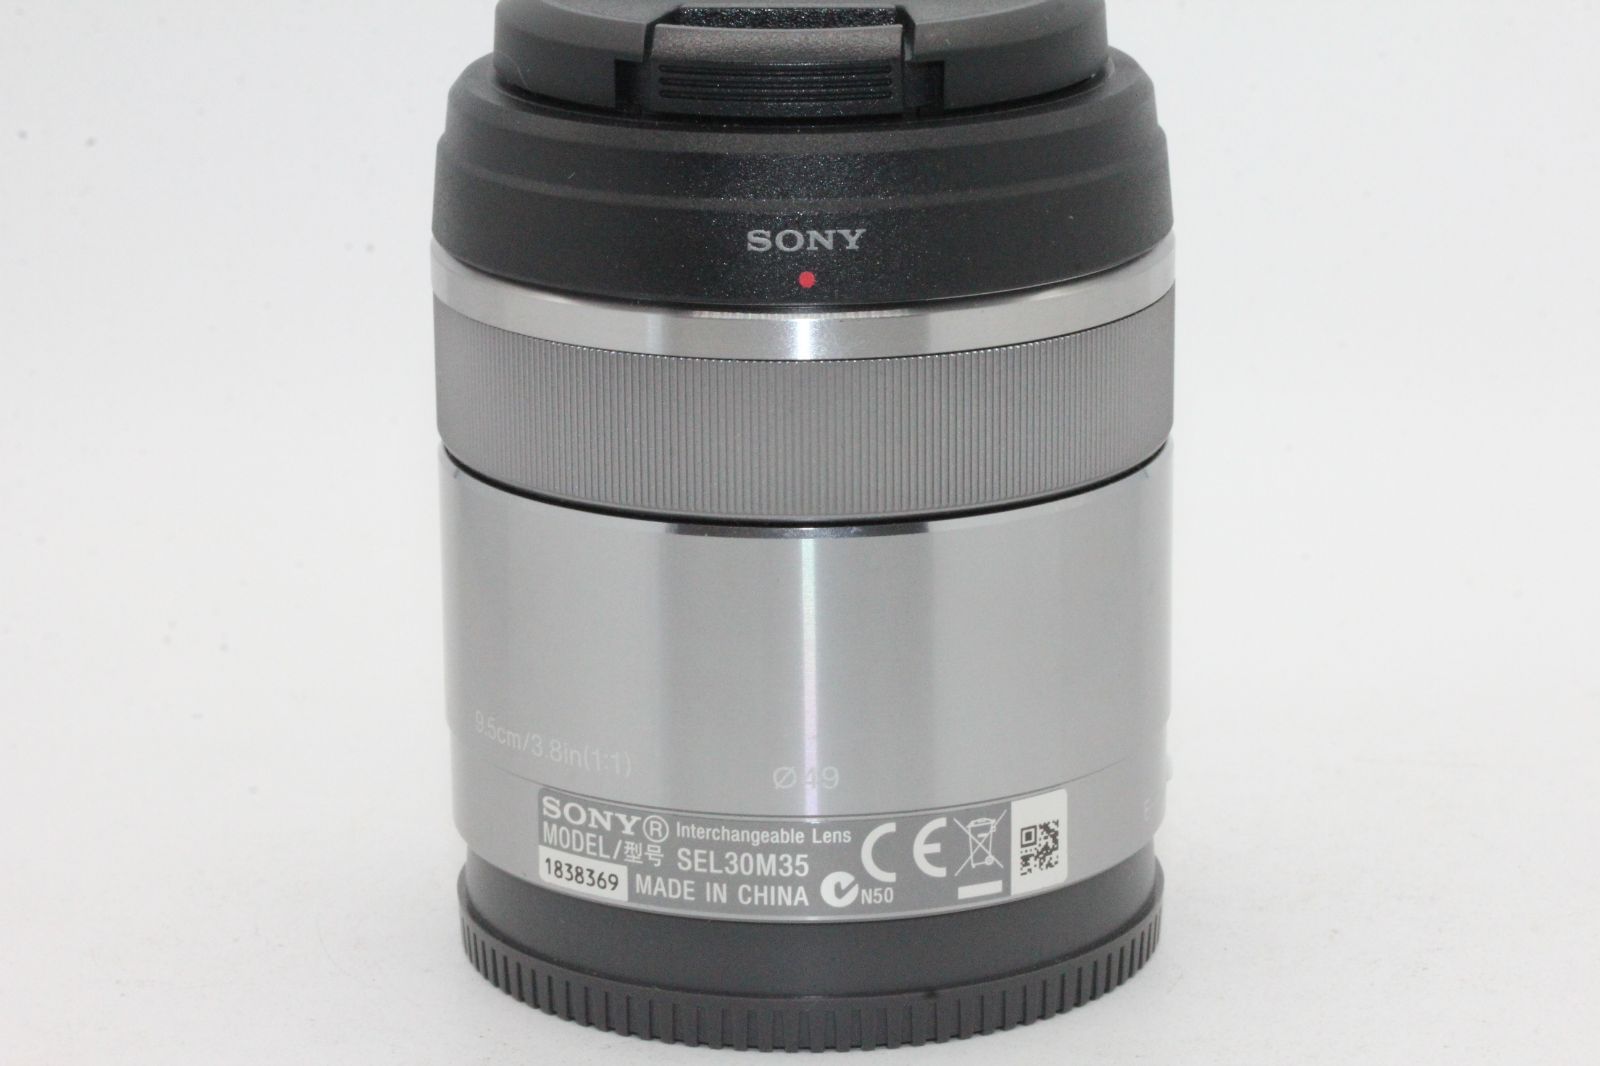 ソニー   マクロ   APS-C   E 30mm F3.5 Macro   デジタル一眼カメラα[Eマウント]用 純正レンズ   SEL30M35 - 1